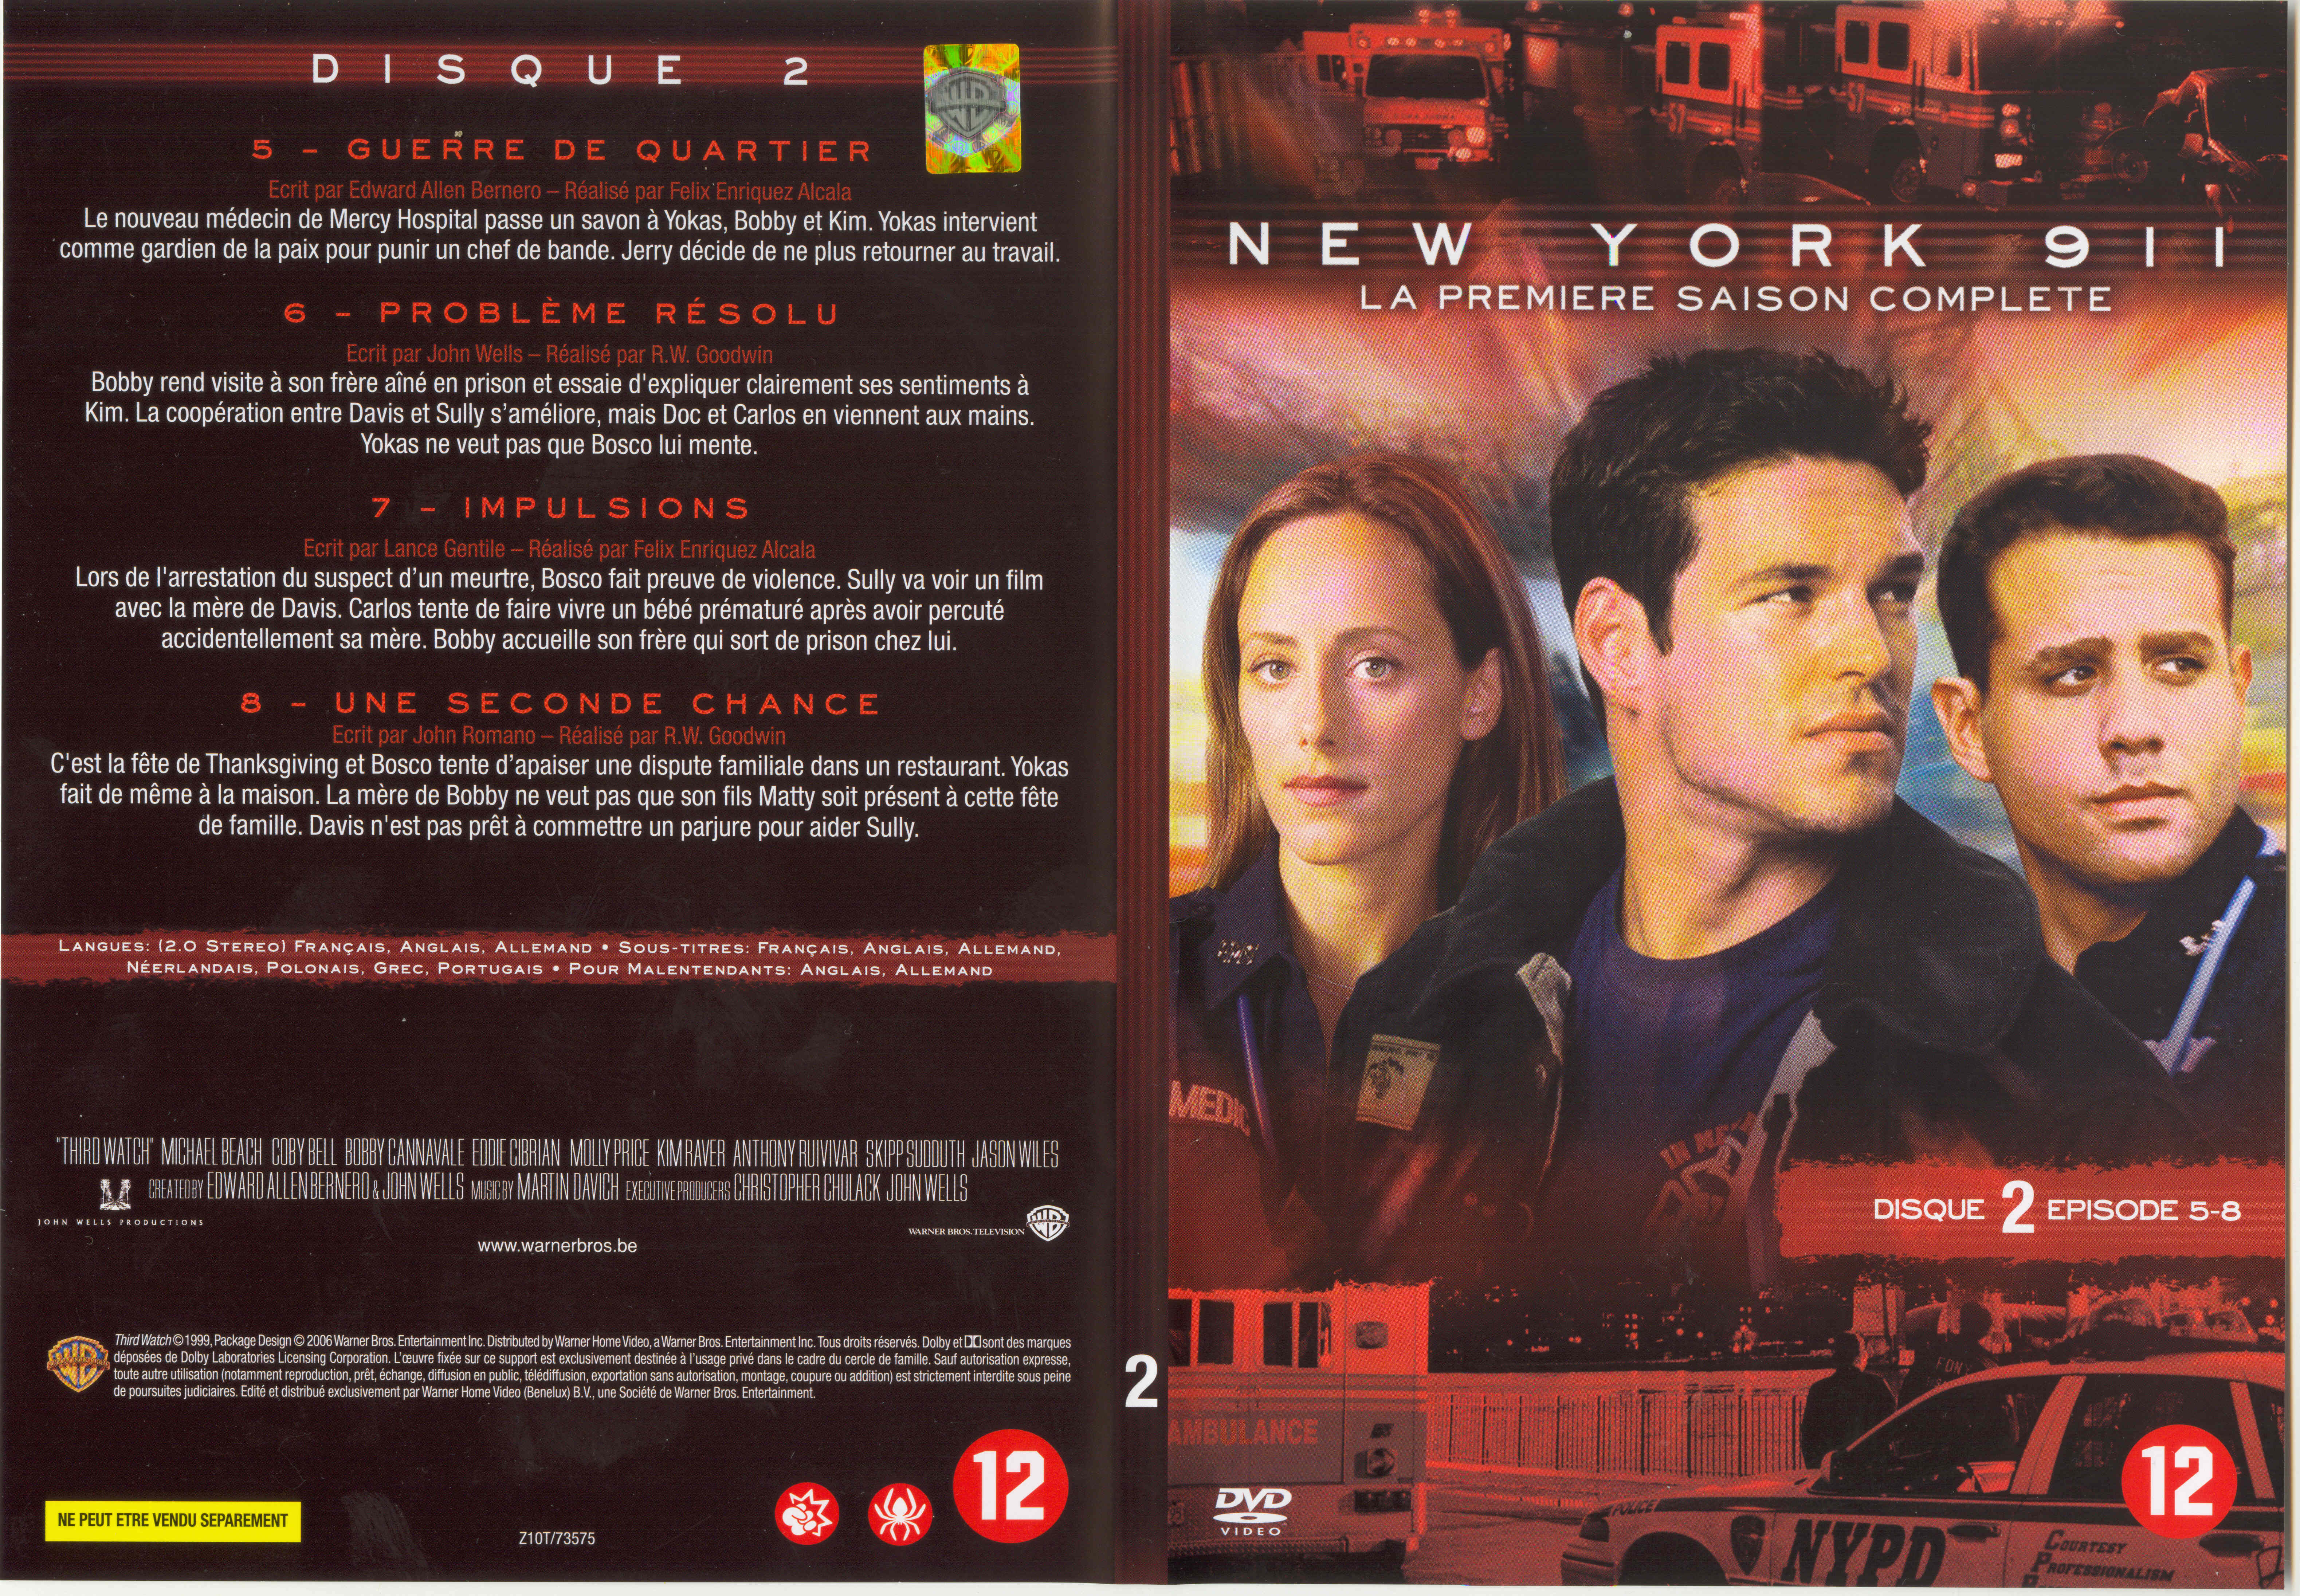 Jaquette DVD New York 911 Saison 1 DVD 2